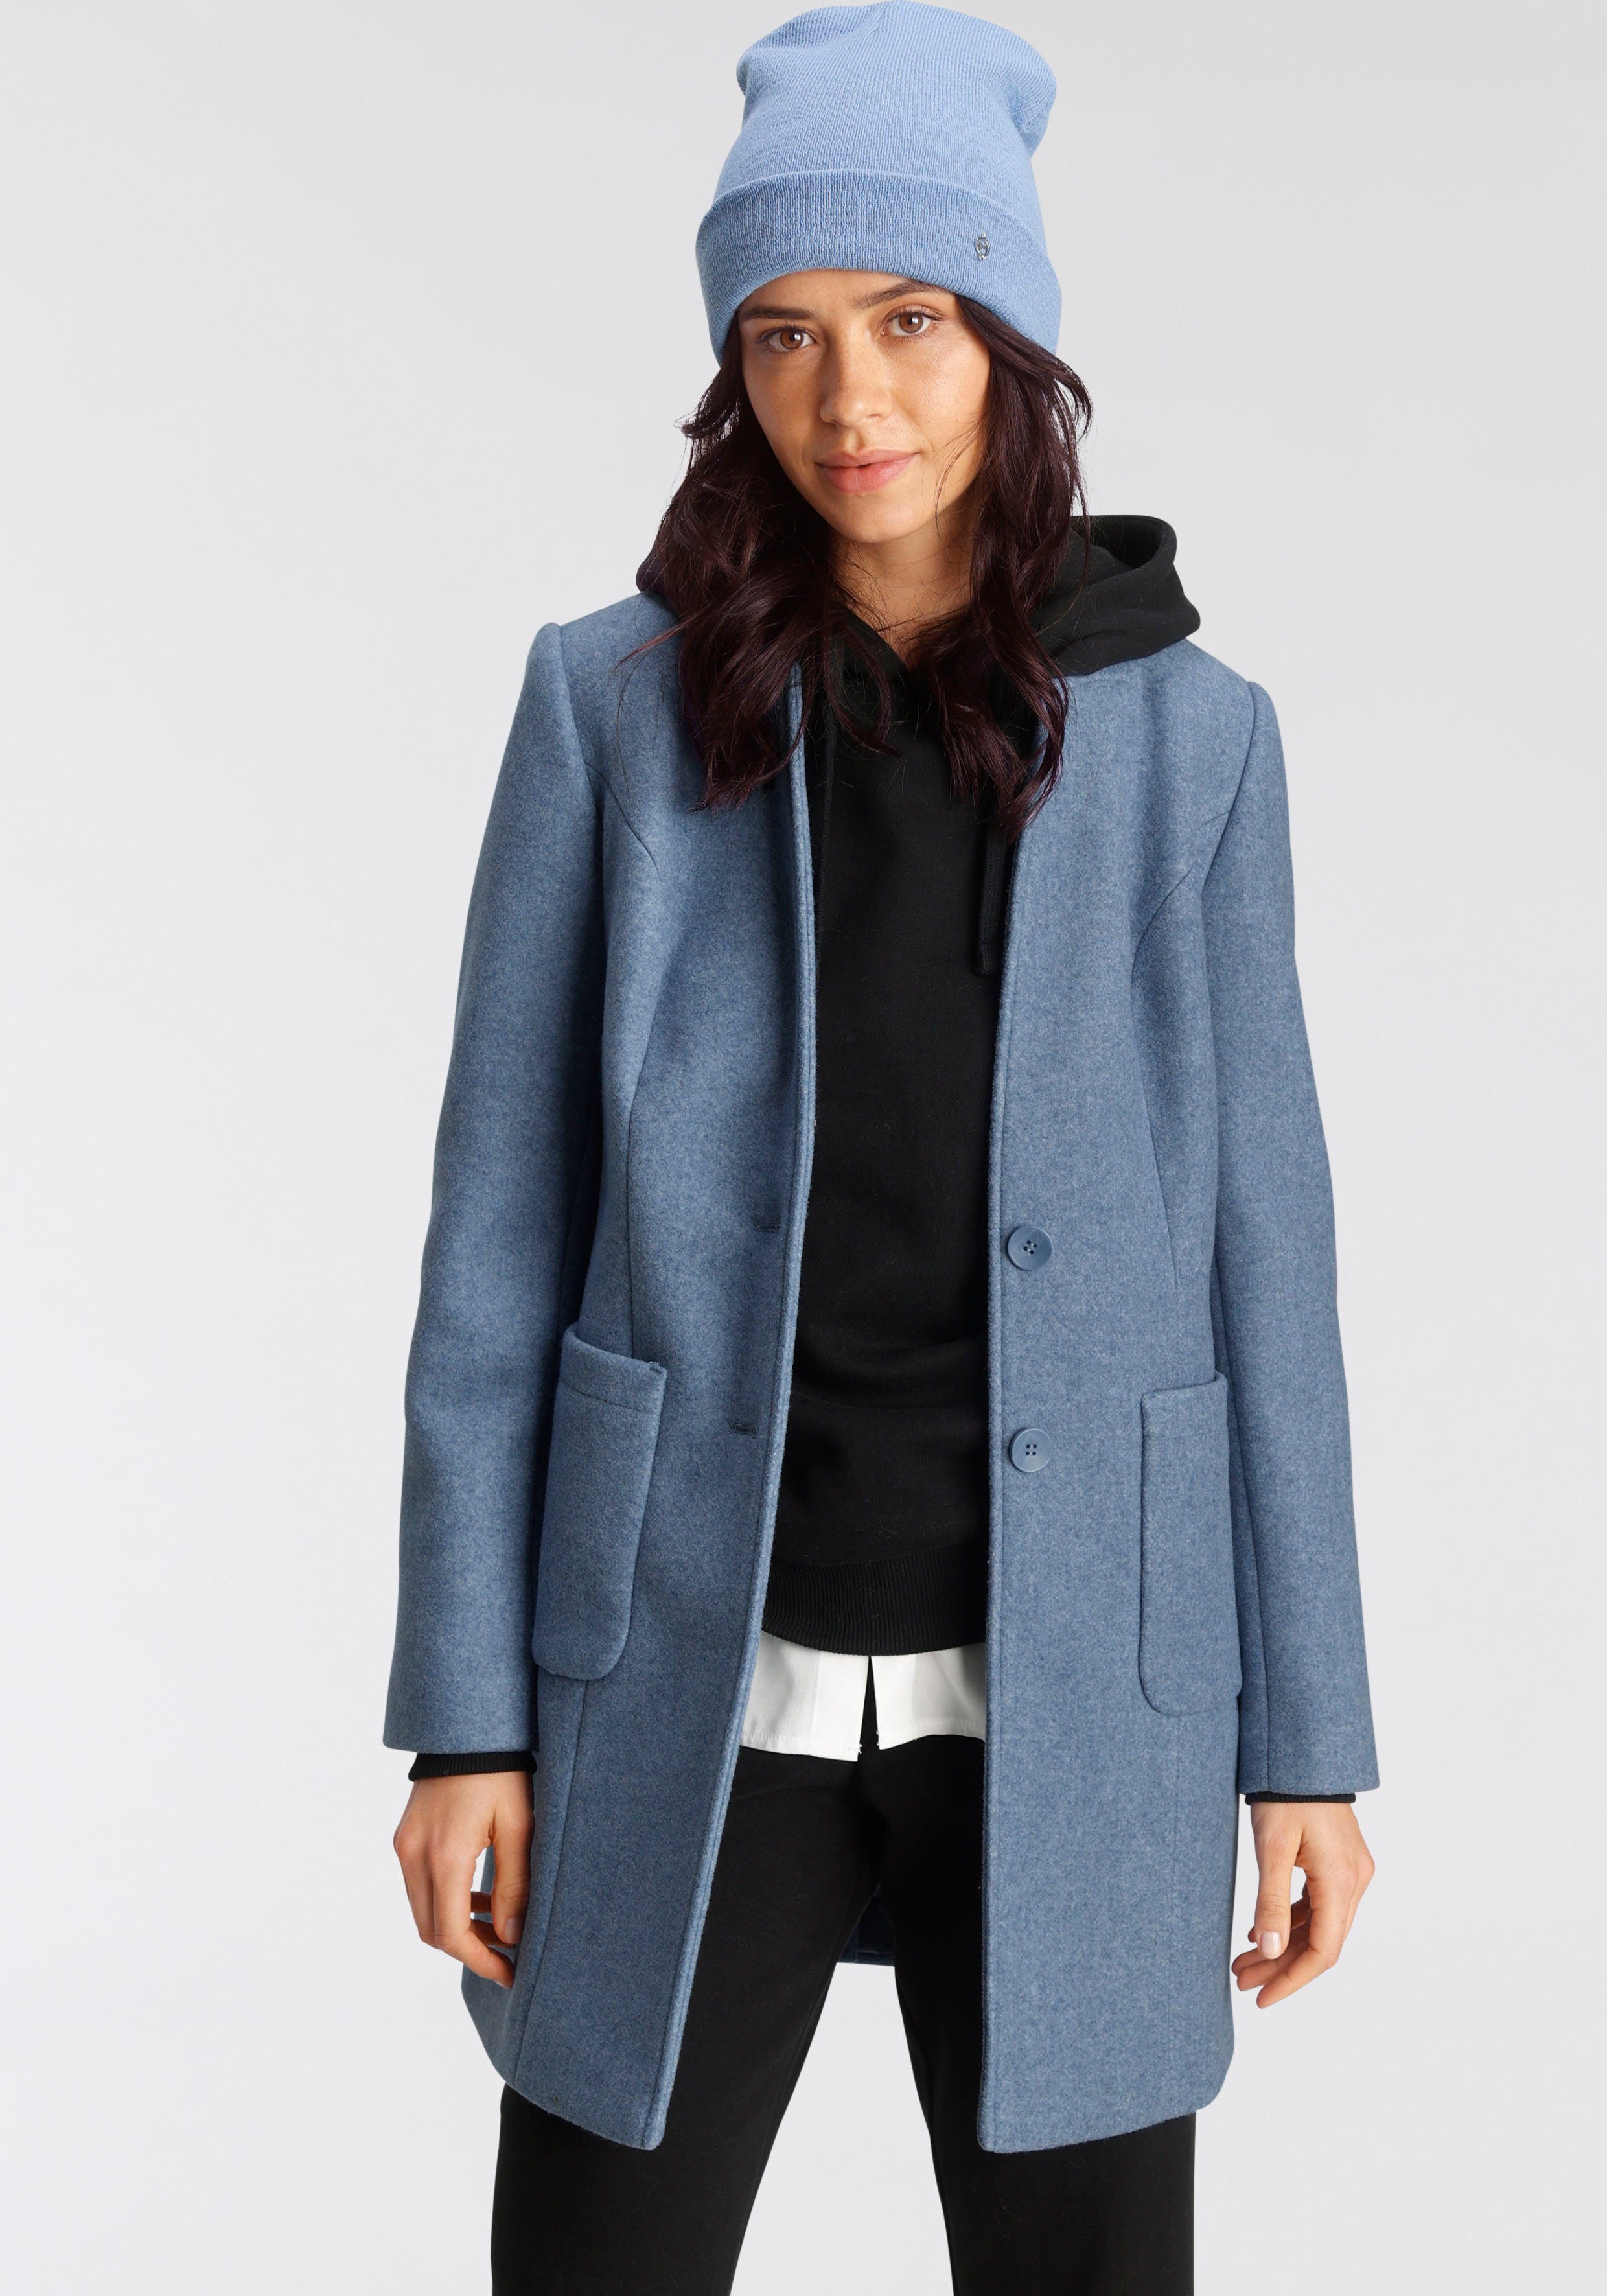 Mantel in blau online kaufen | OTTO